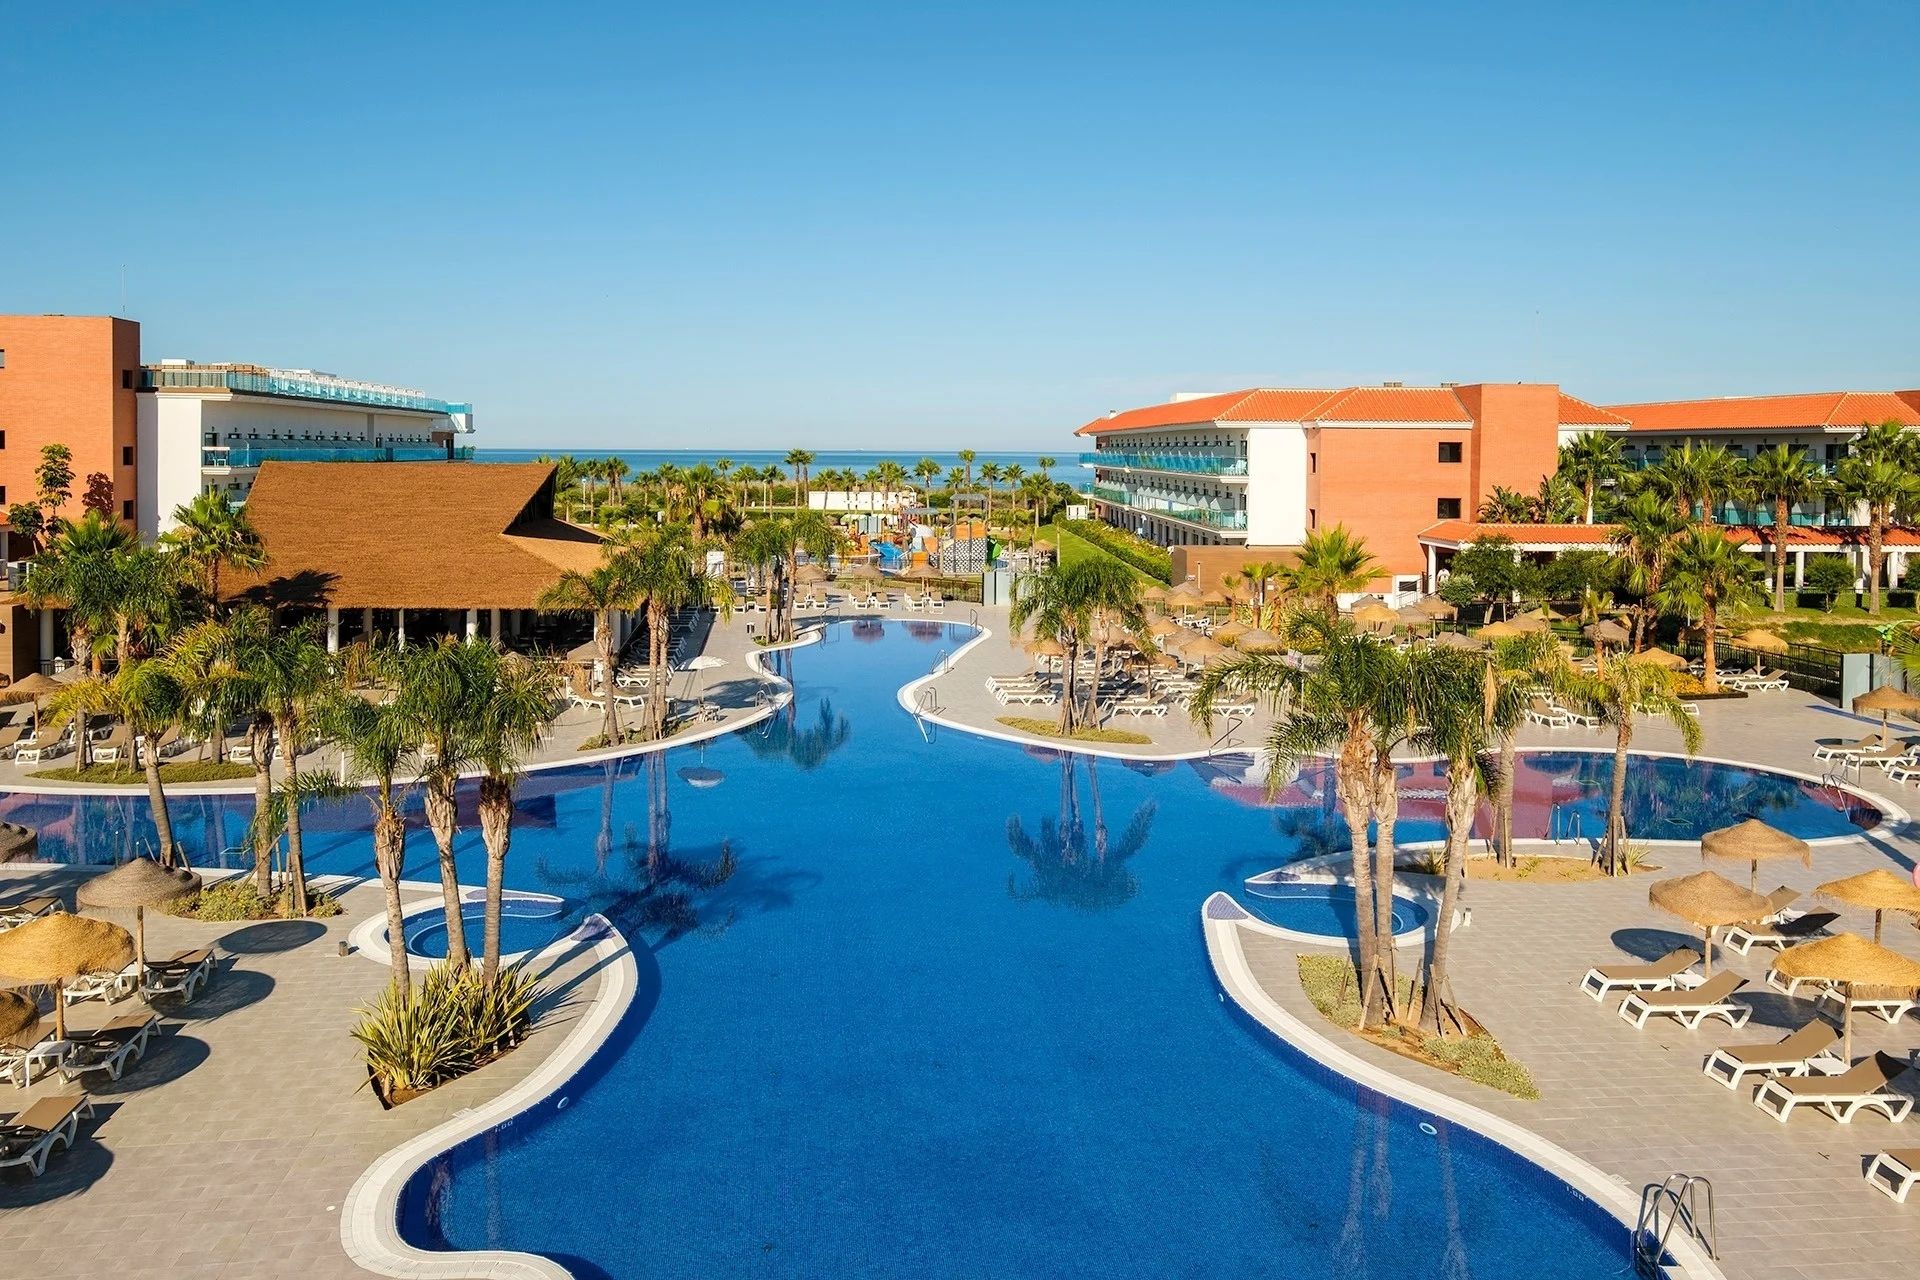 La cadena hotelera ya cuenta con este resort en Costa Ballena, por lo que será su segundo en la Costa Noroeste de Cádiz